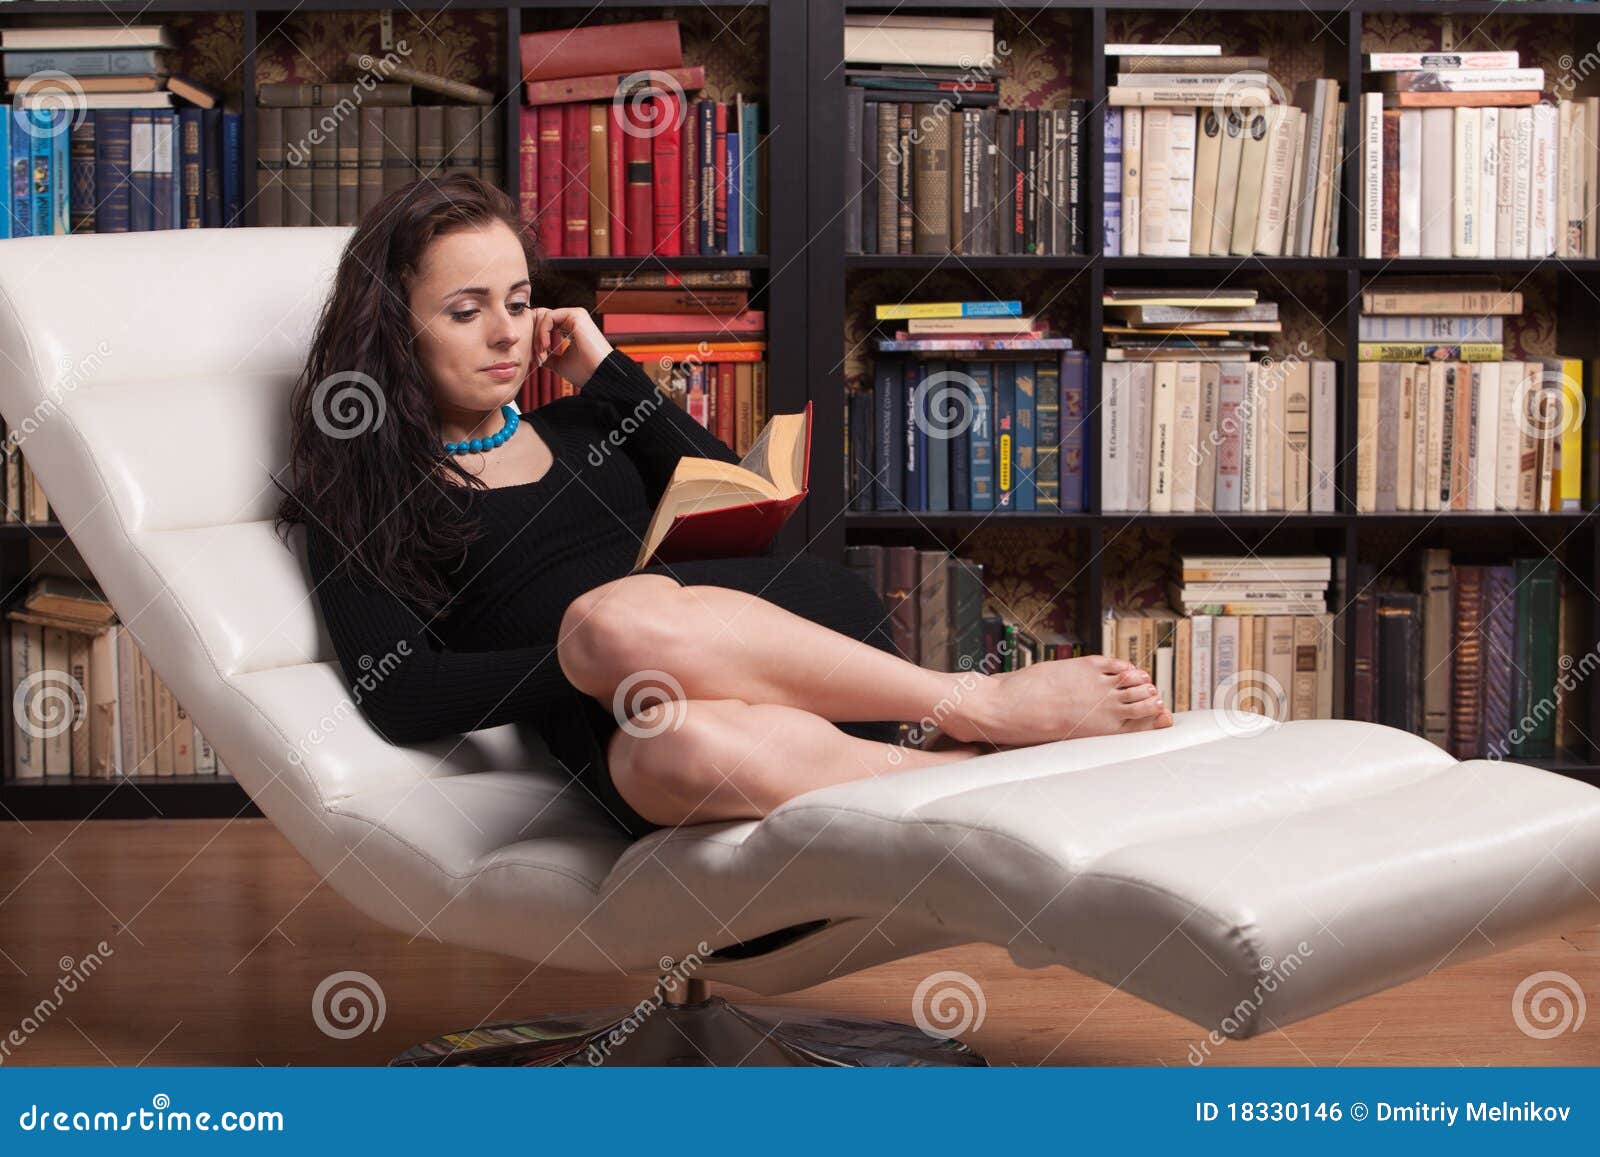 Сидящая женщина с книгой. Девушка читает в кресле. Девушка сидит на кушетке. Девушка сидит с книгой. Кресло для чтения книг.